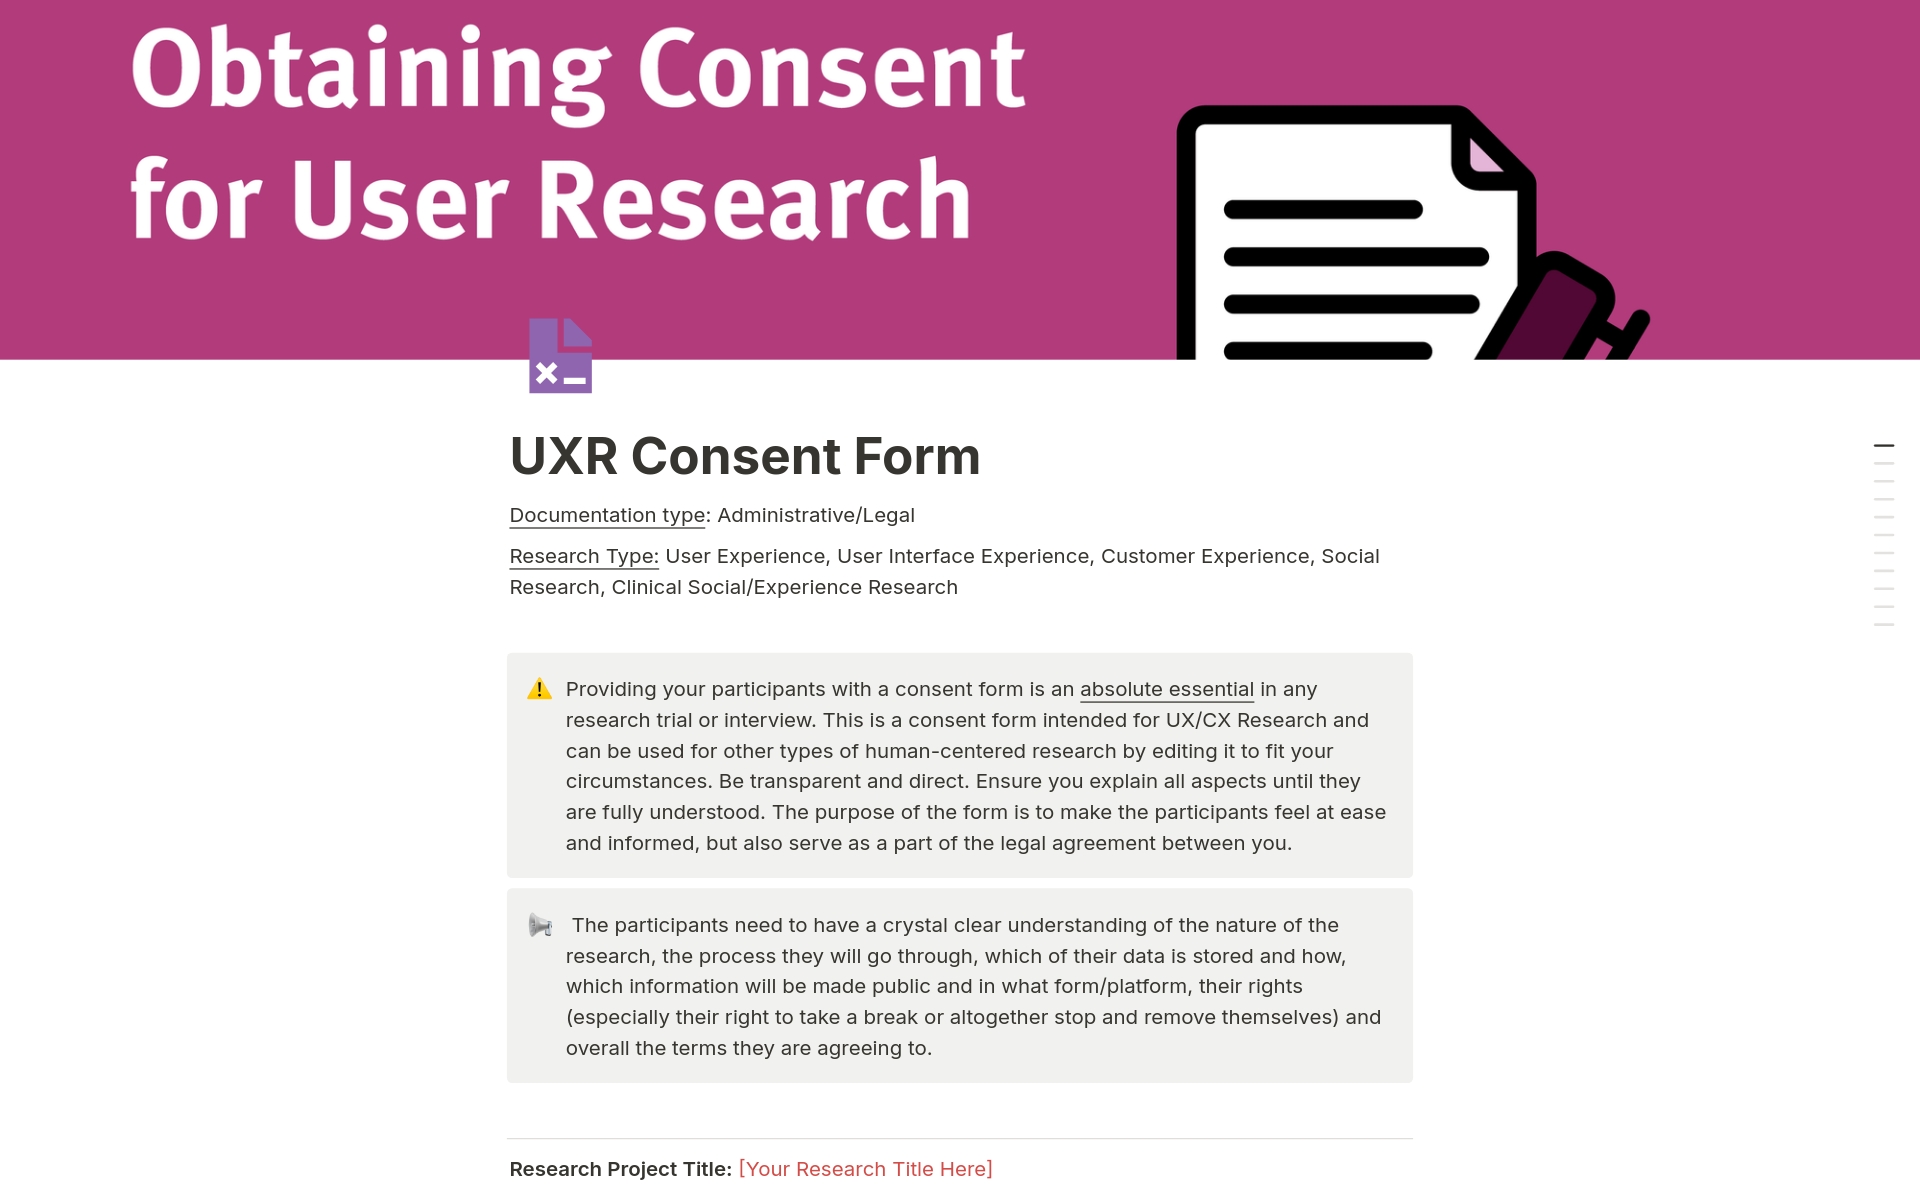 Uma prévia do modelo para UXR Consent Form 